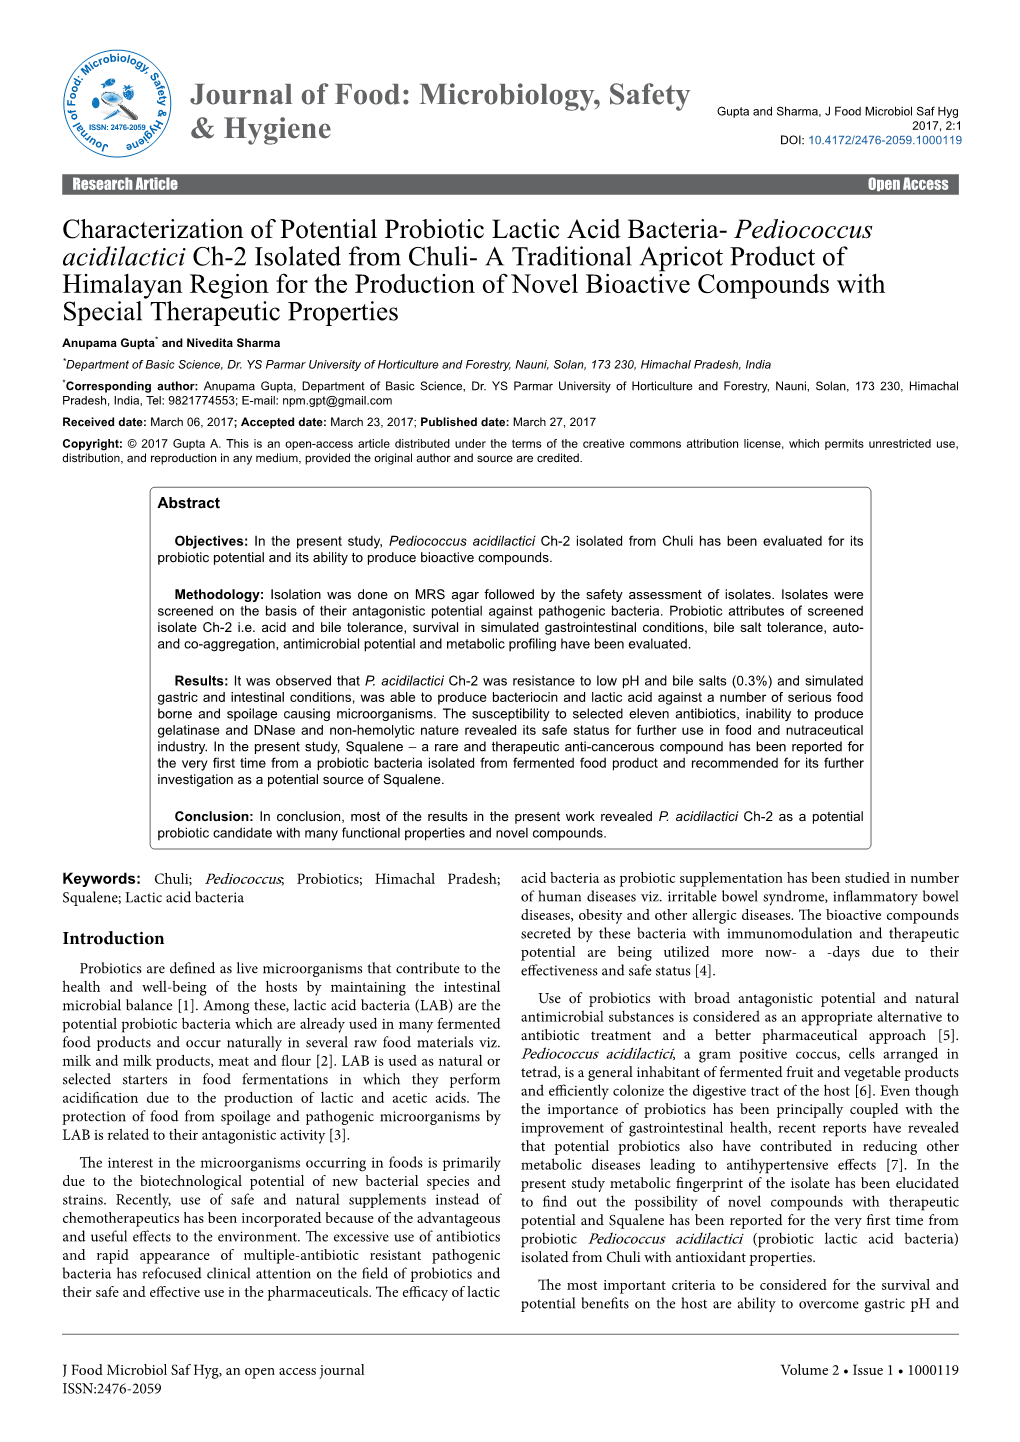 Characterization of Potential Probiotic Lactic Acid Bacteria- Pediococcus